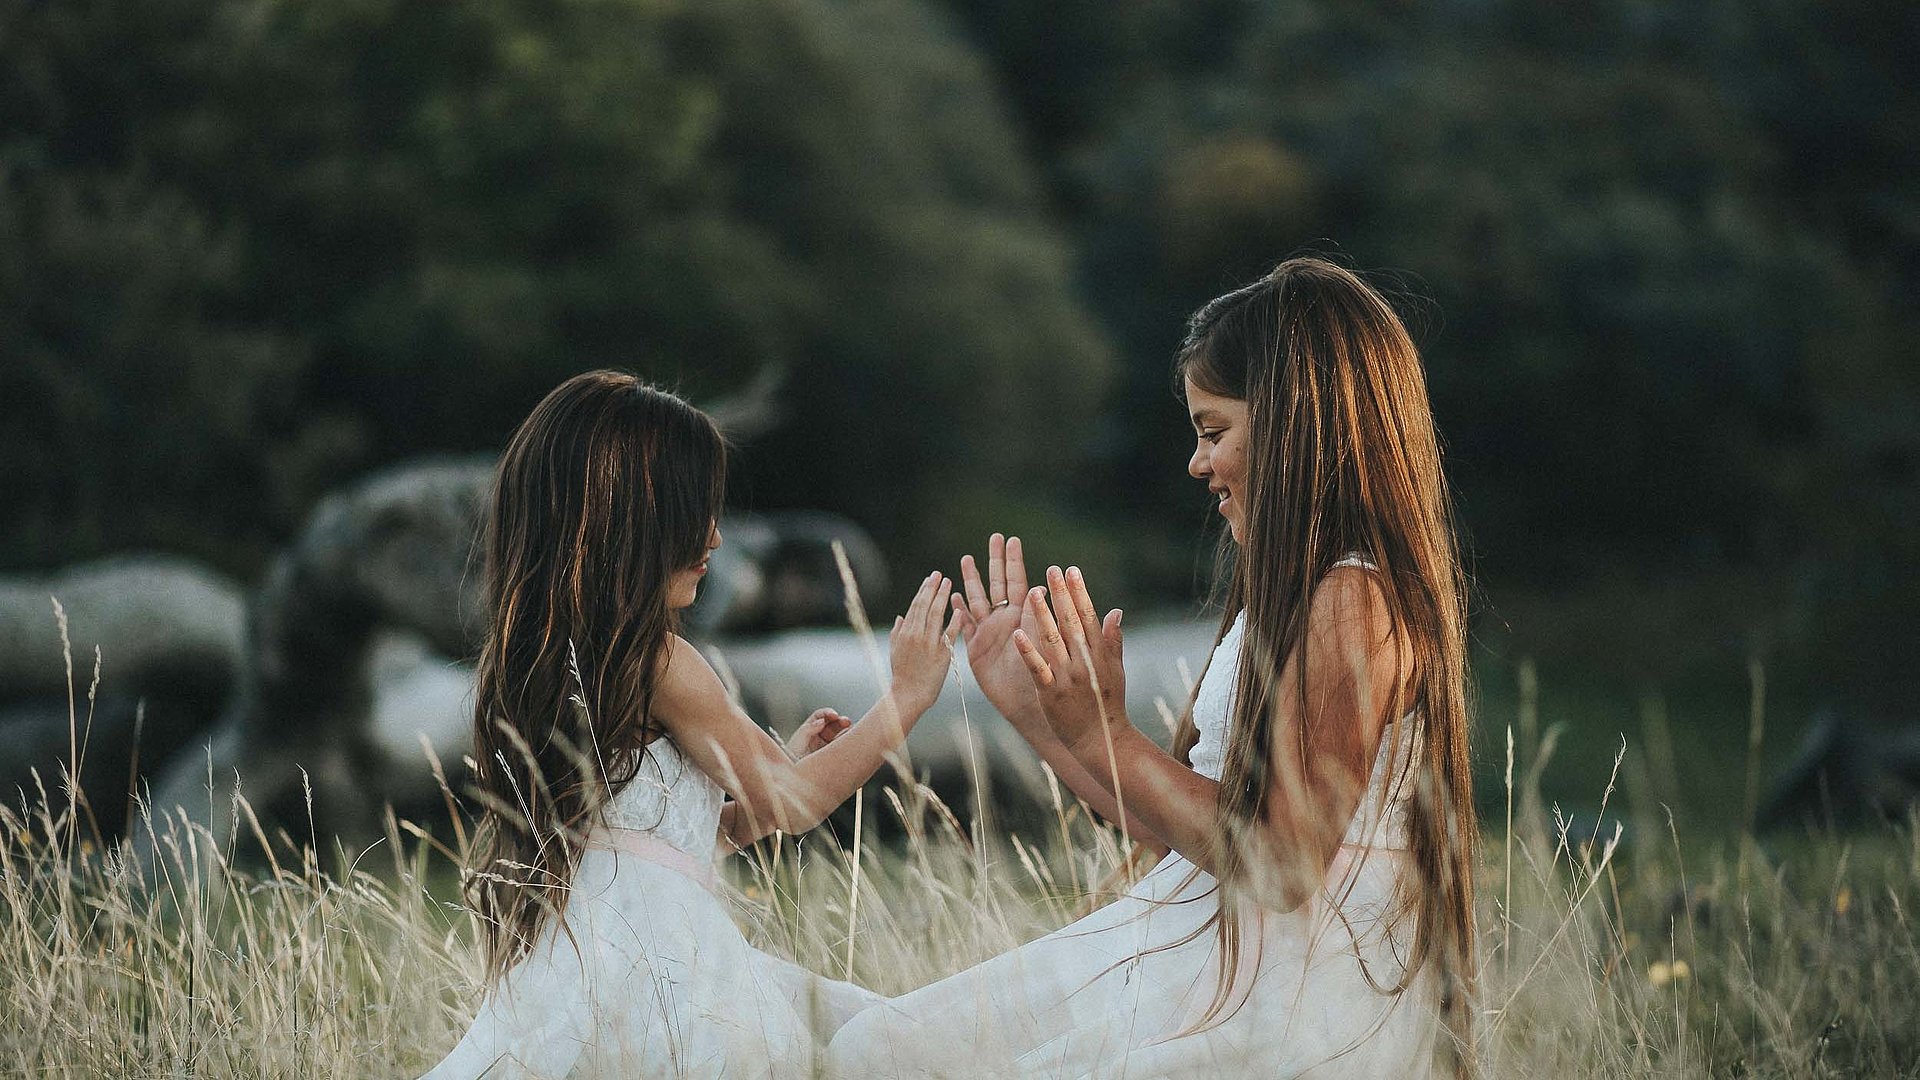 Kinderfreundliche Gastronomie im Ostallgäu - junge Mädchen im weißen Kleid spielen zusammen auf einem Feld